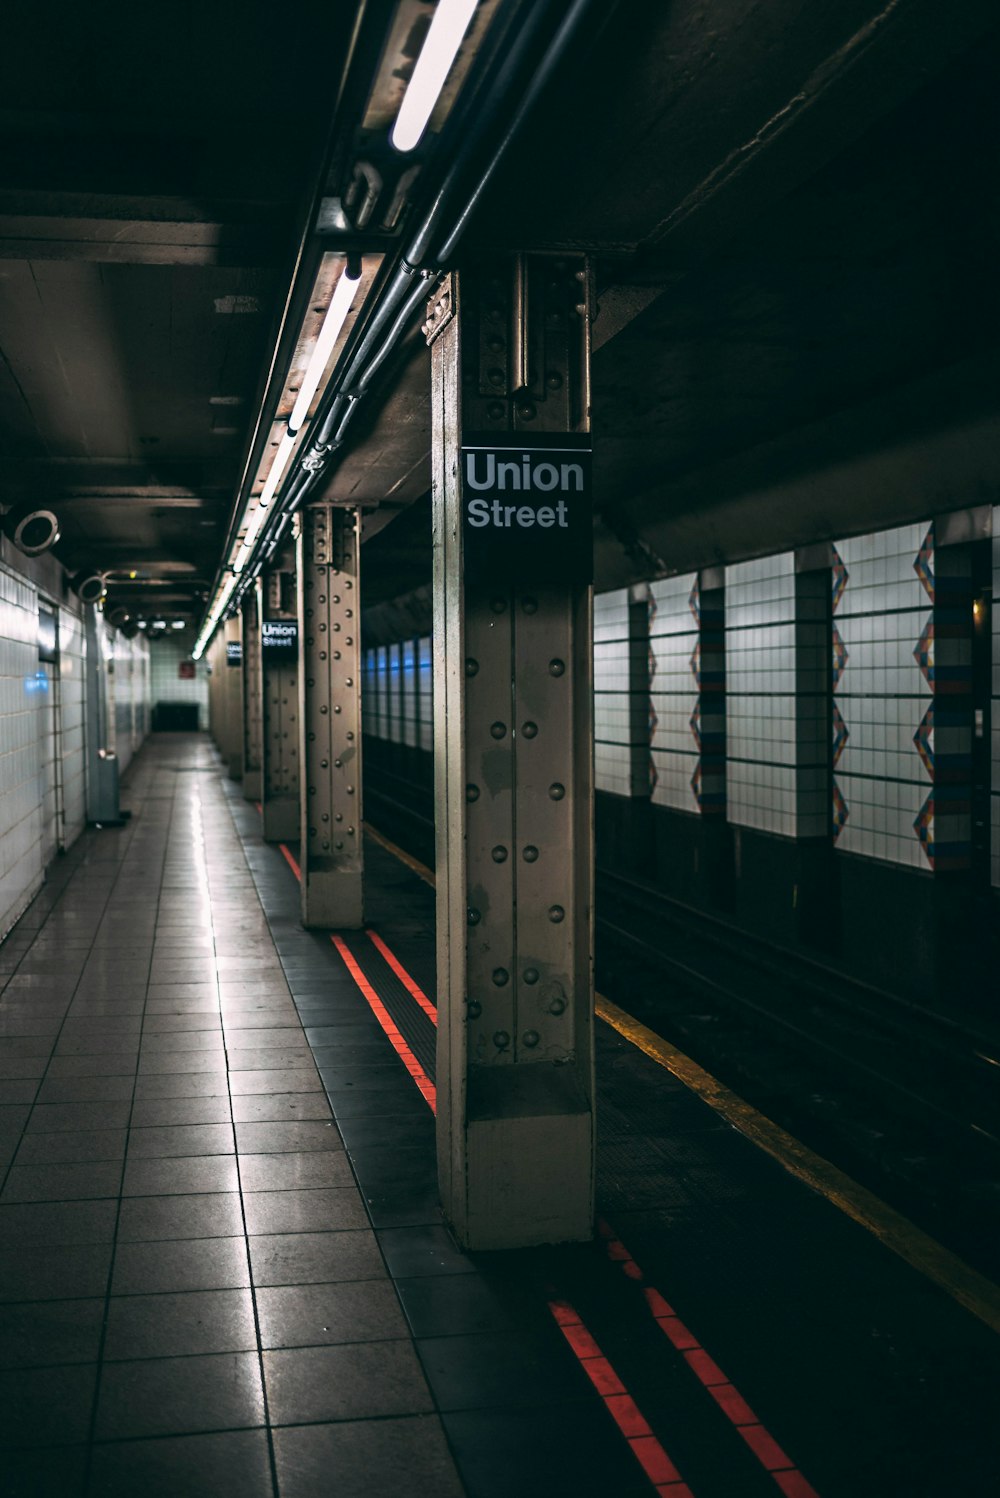 subway station photo – Free Corridor Image on Unsplash